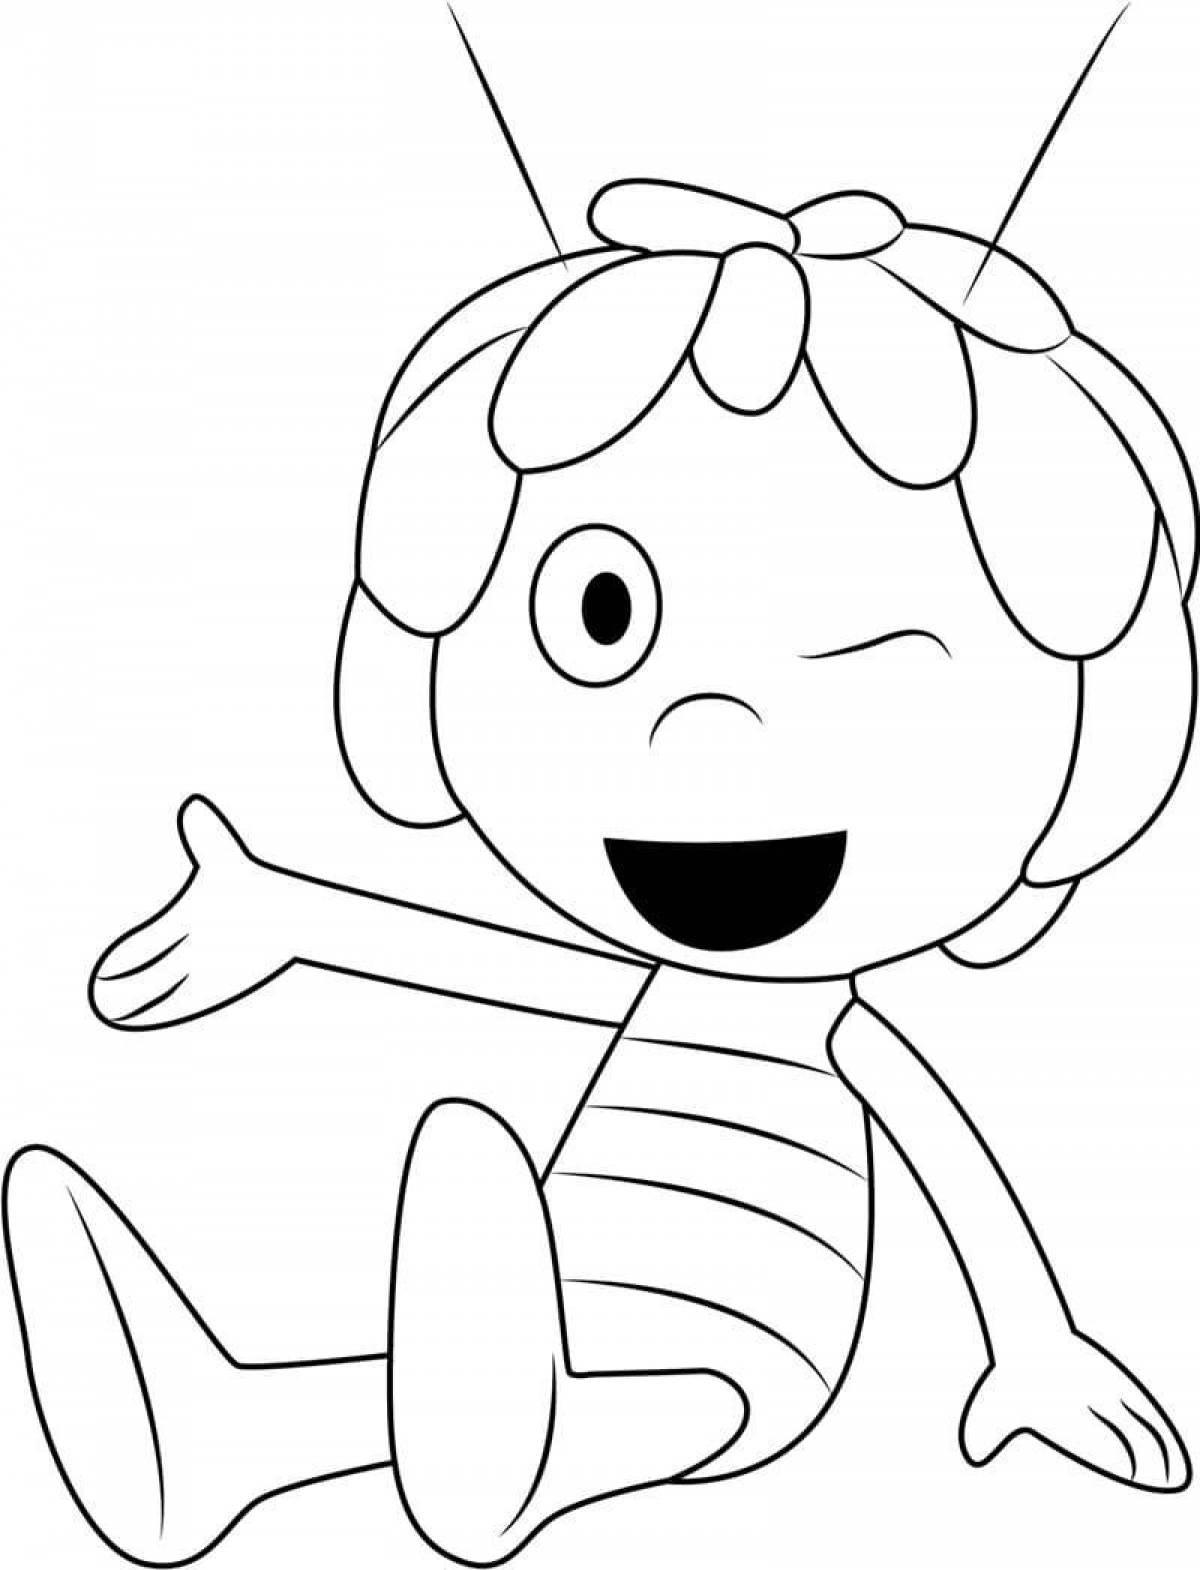 Joy bee coloring page